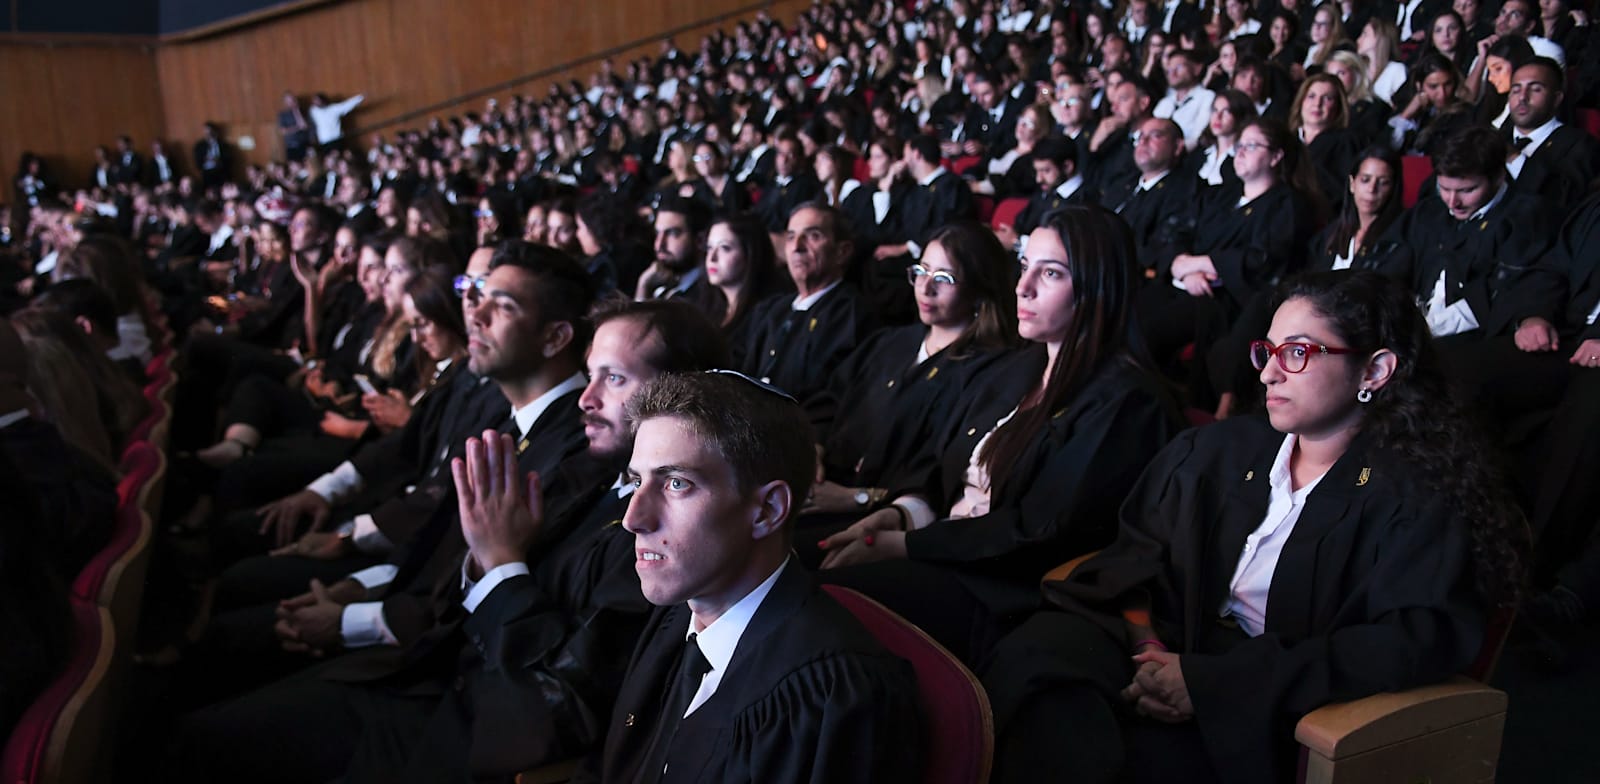 טקס הסמכת עורכי דין חדשים בירושלים, 2019 / צילום: רפי קוץ